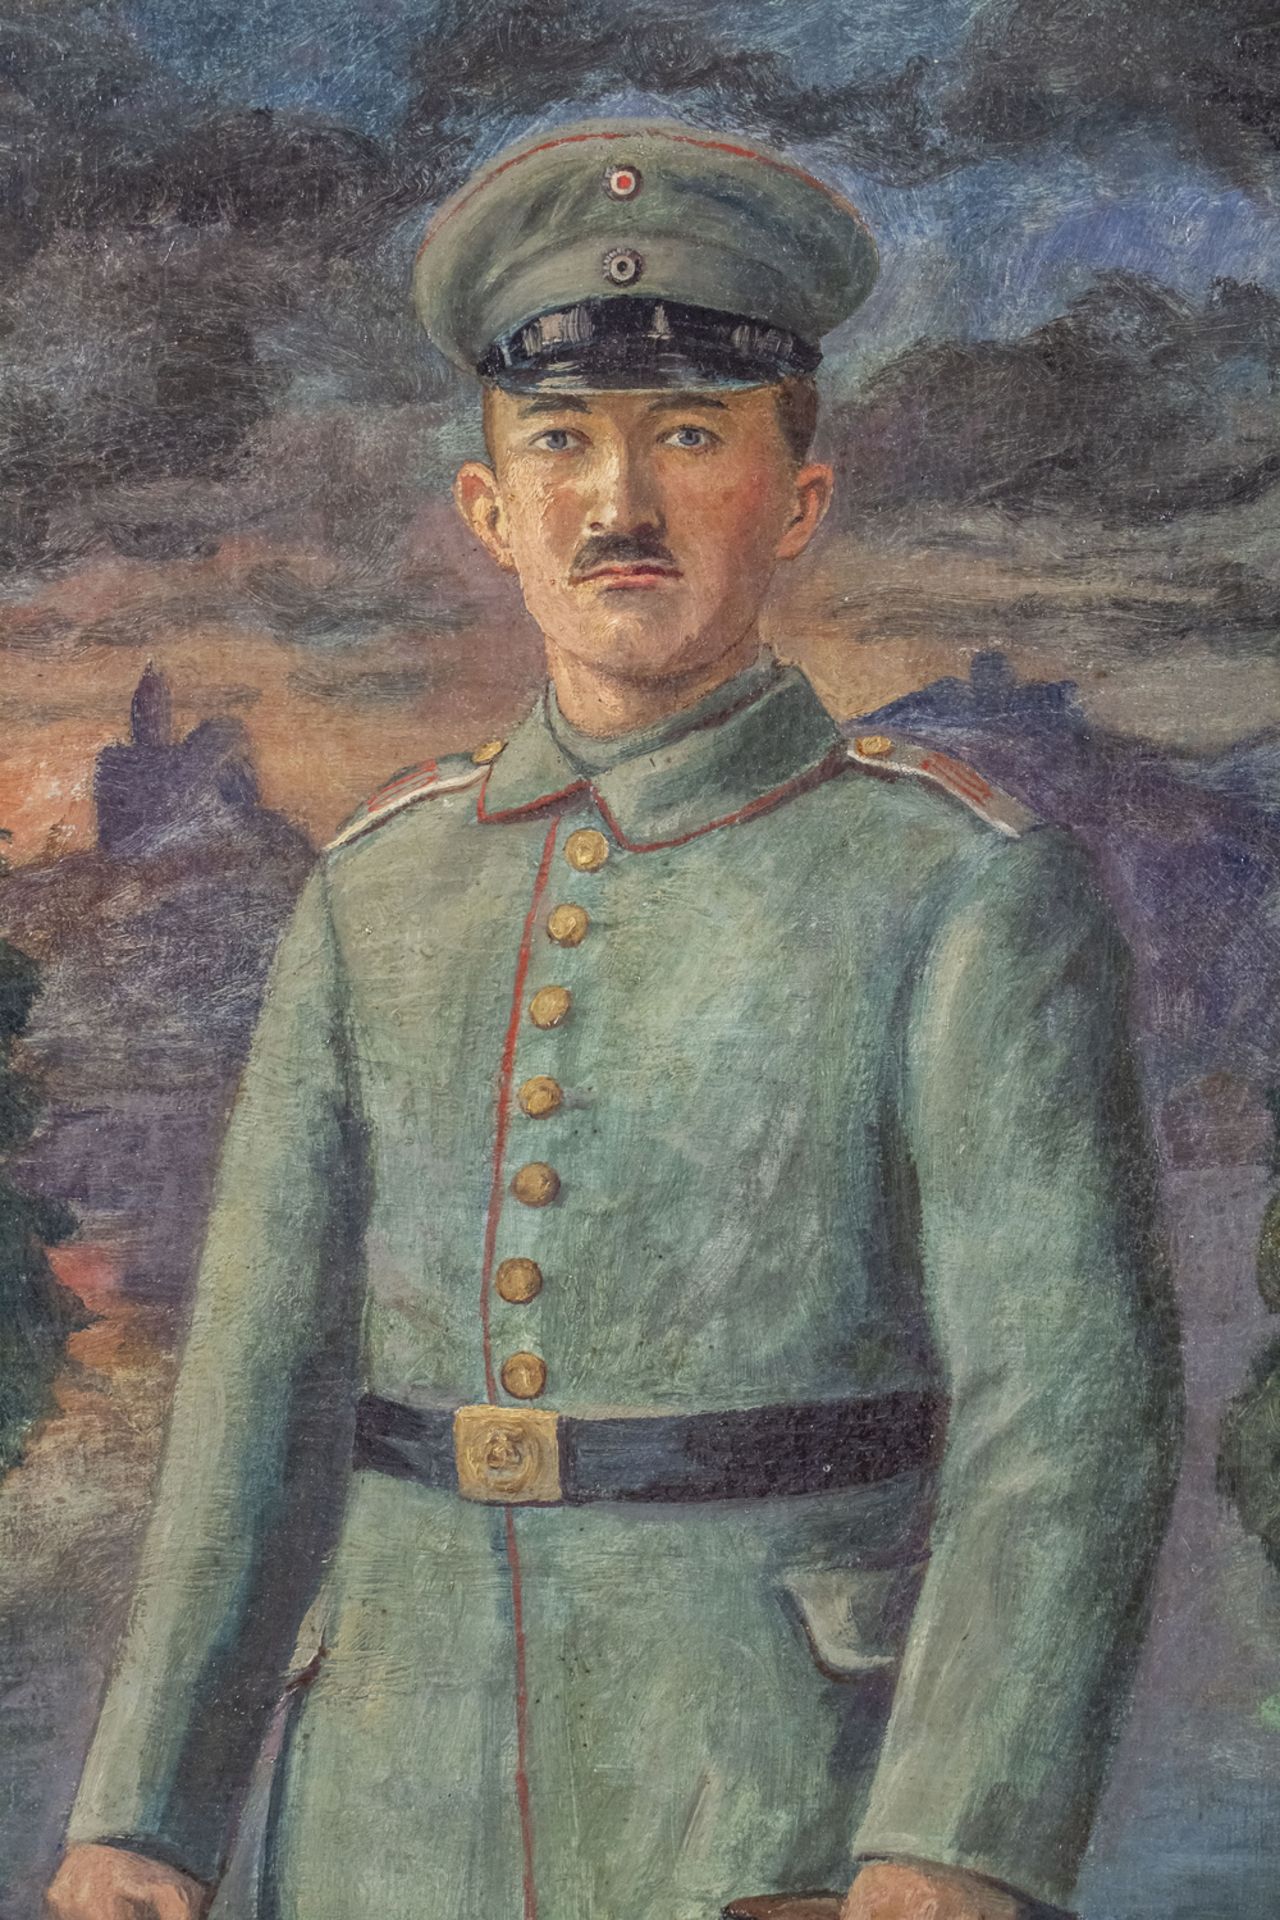 Gemälde eines Soldaten / A painting of a soldier, vermutlich 1. Weltkrieg - Bild 3 aus 5